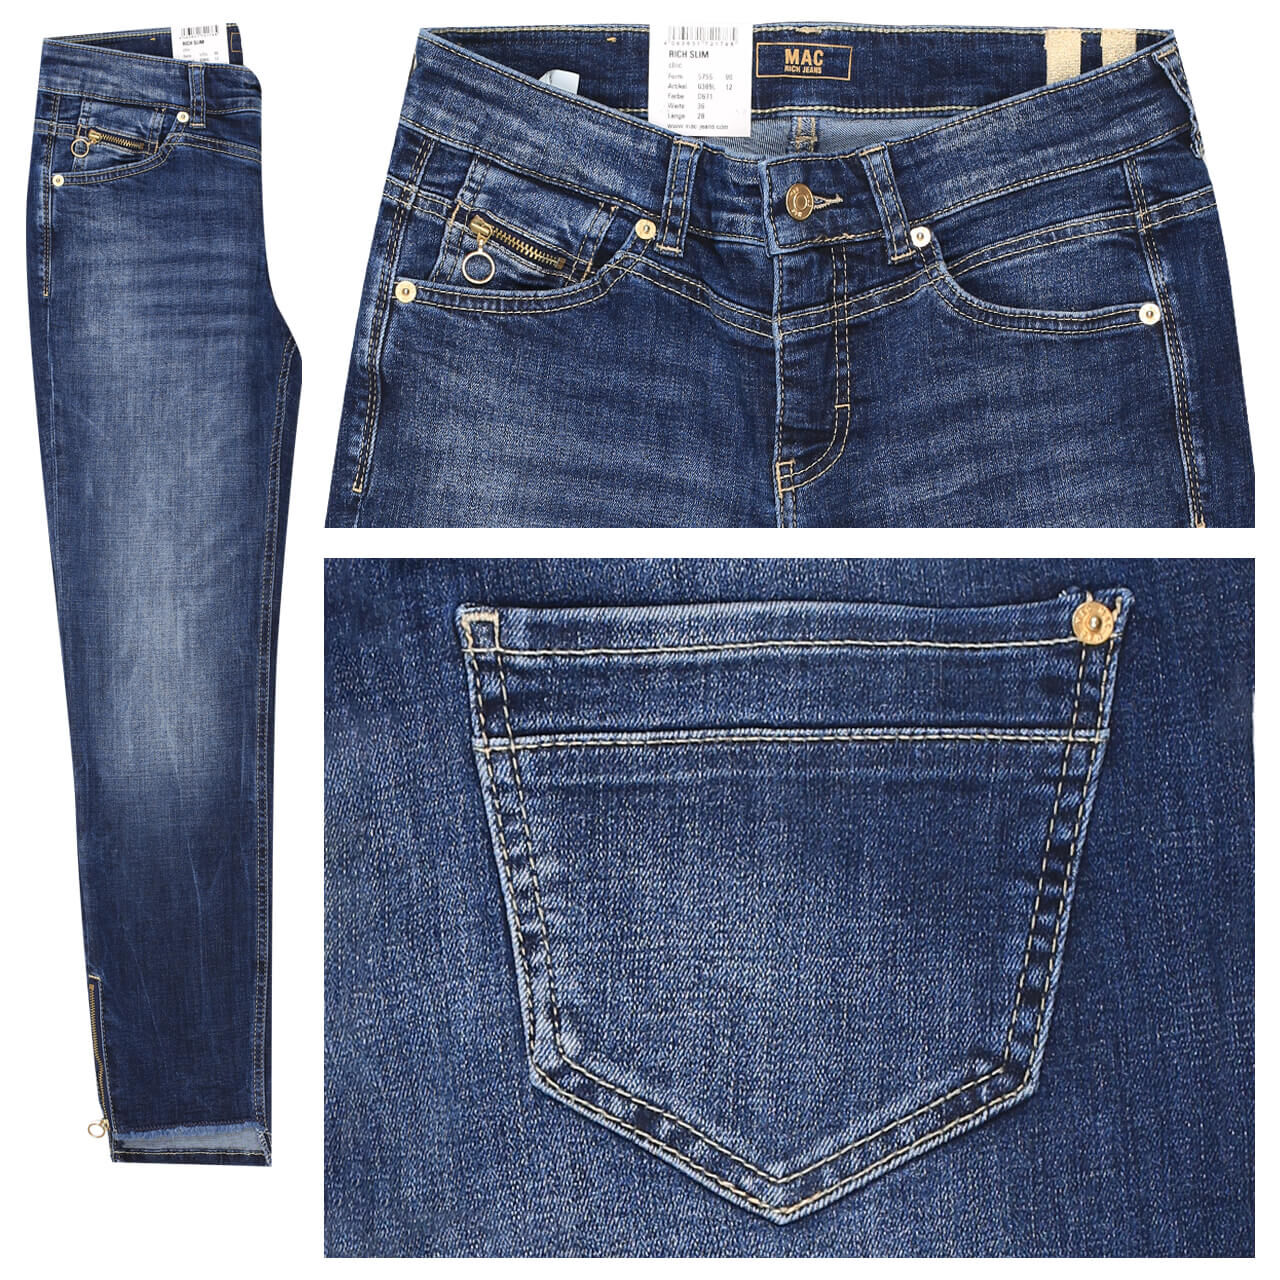 MAC Jeans Rich Slim für Damen in Dunkelblau verwaschen, FarbNr.: D671